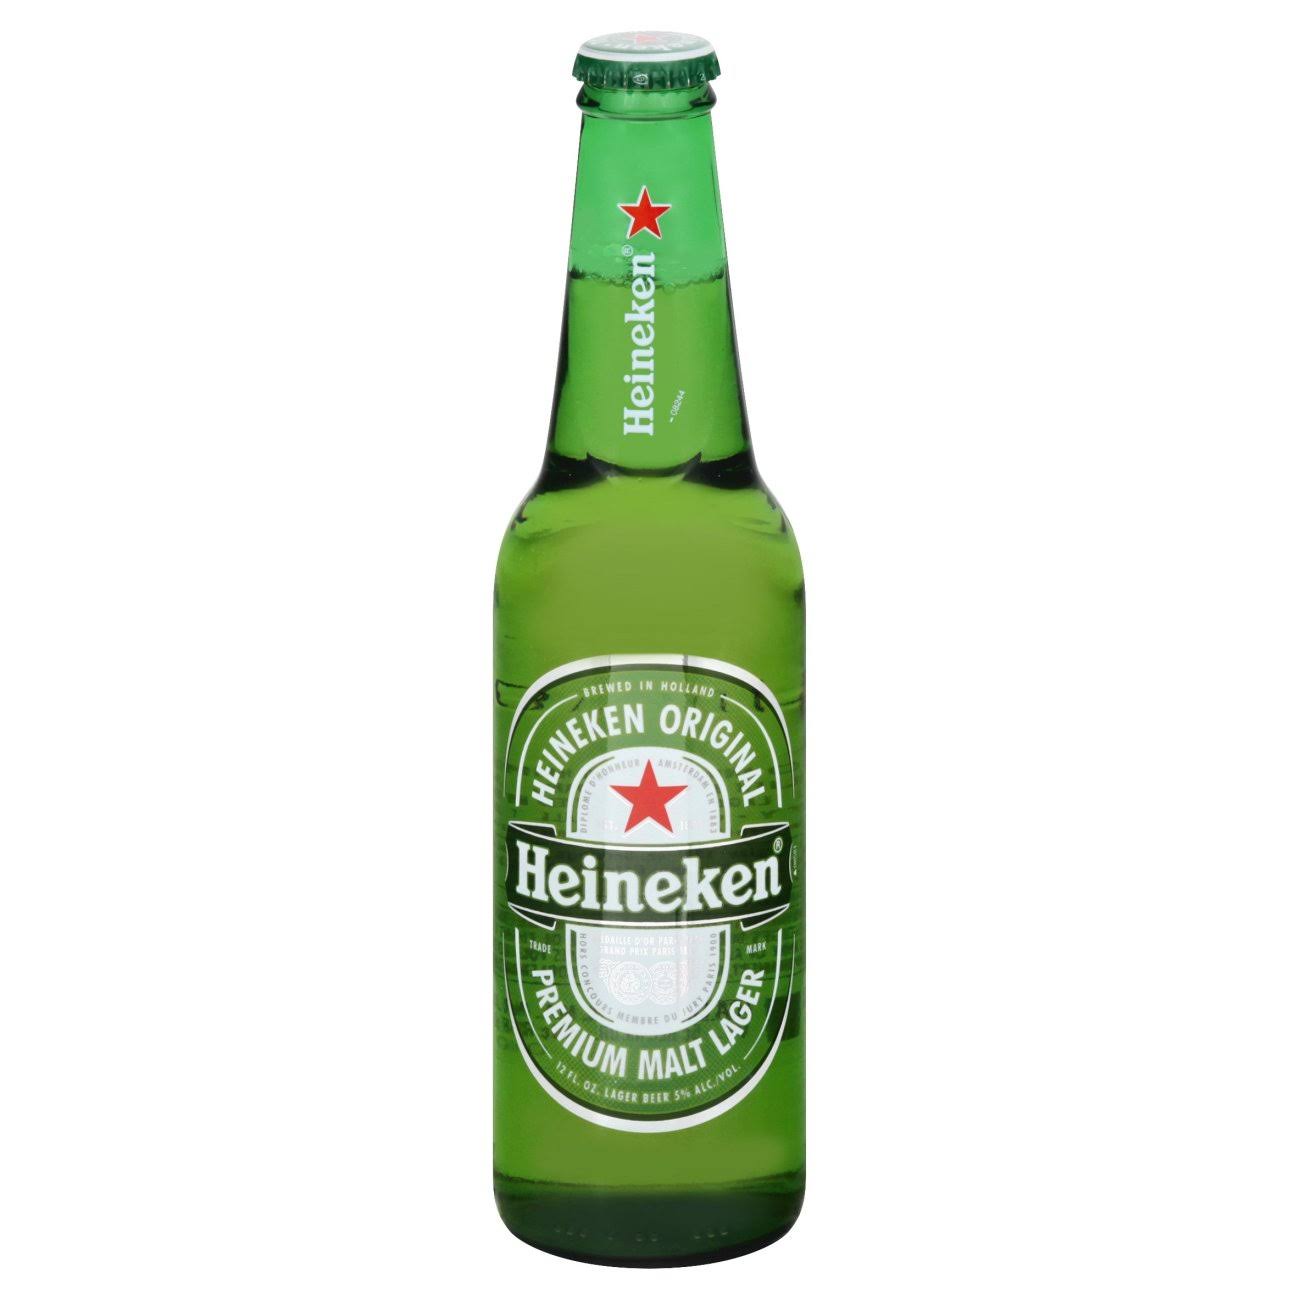 Heineken Beer, Premium Malt Lager - 12 fl oz